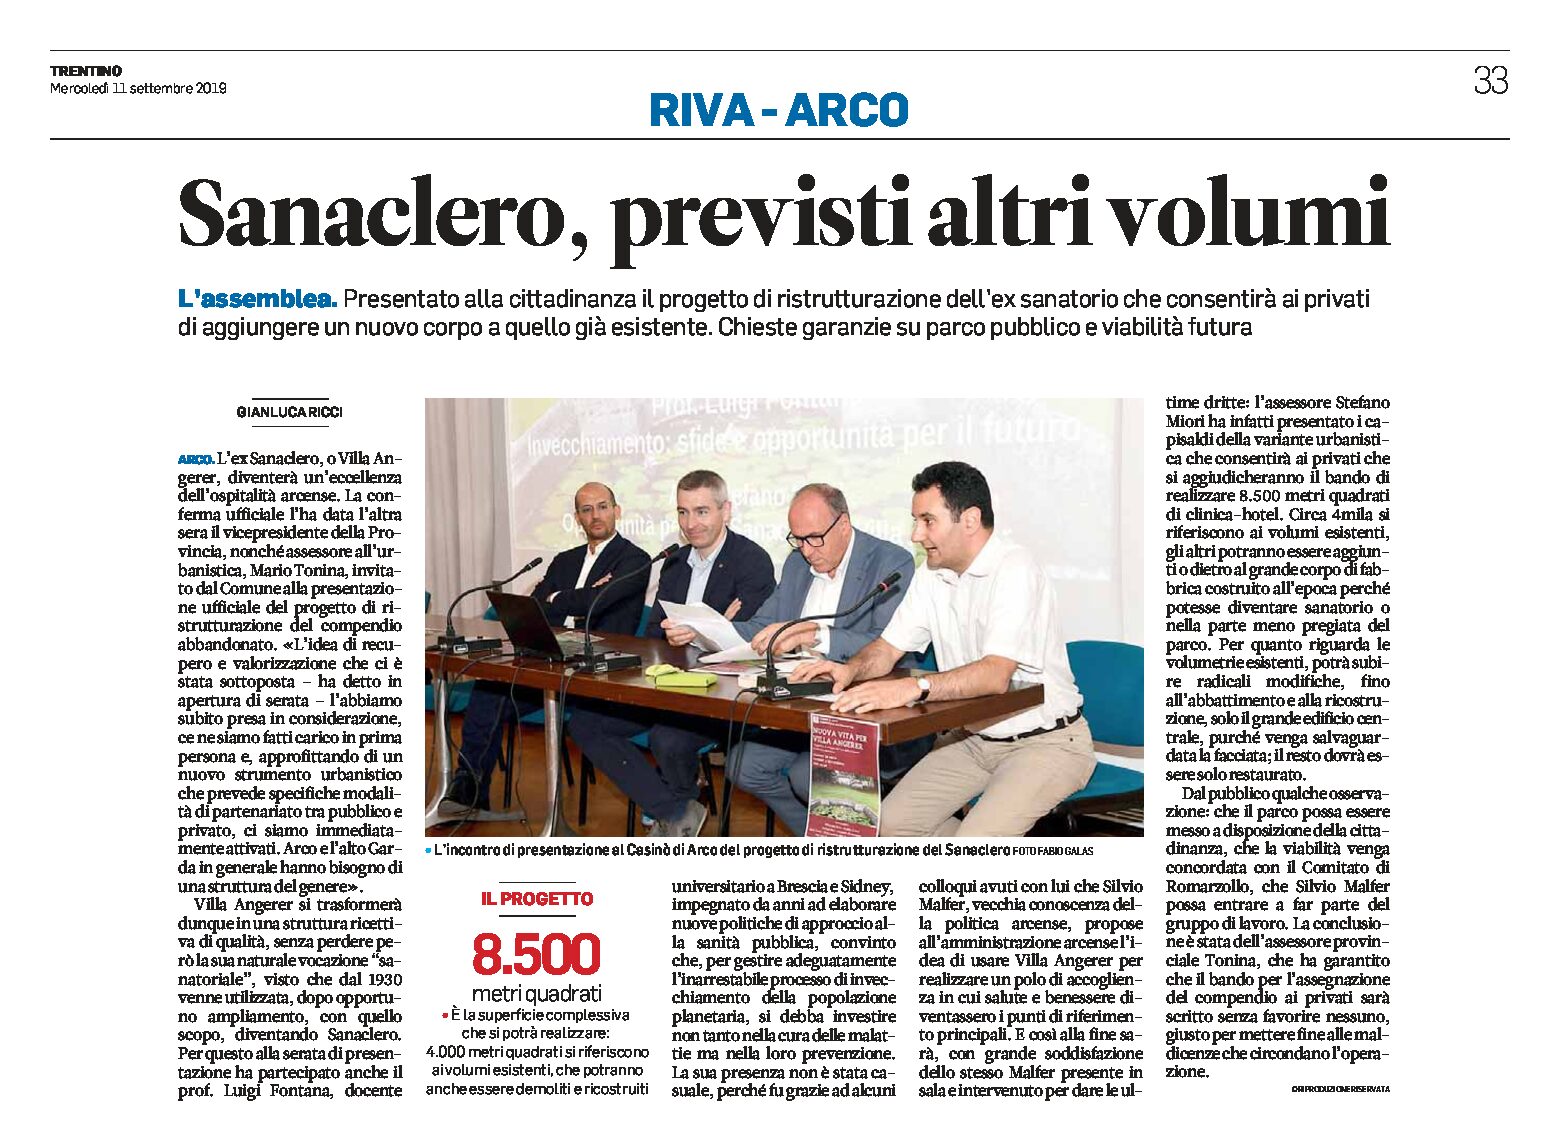 Arco, Villa Angerer-Sanaclero: previsti altri volumi. Presentato alla cittadinanza il progetto di ristrutturazione